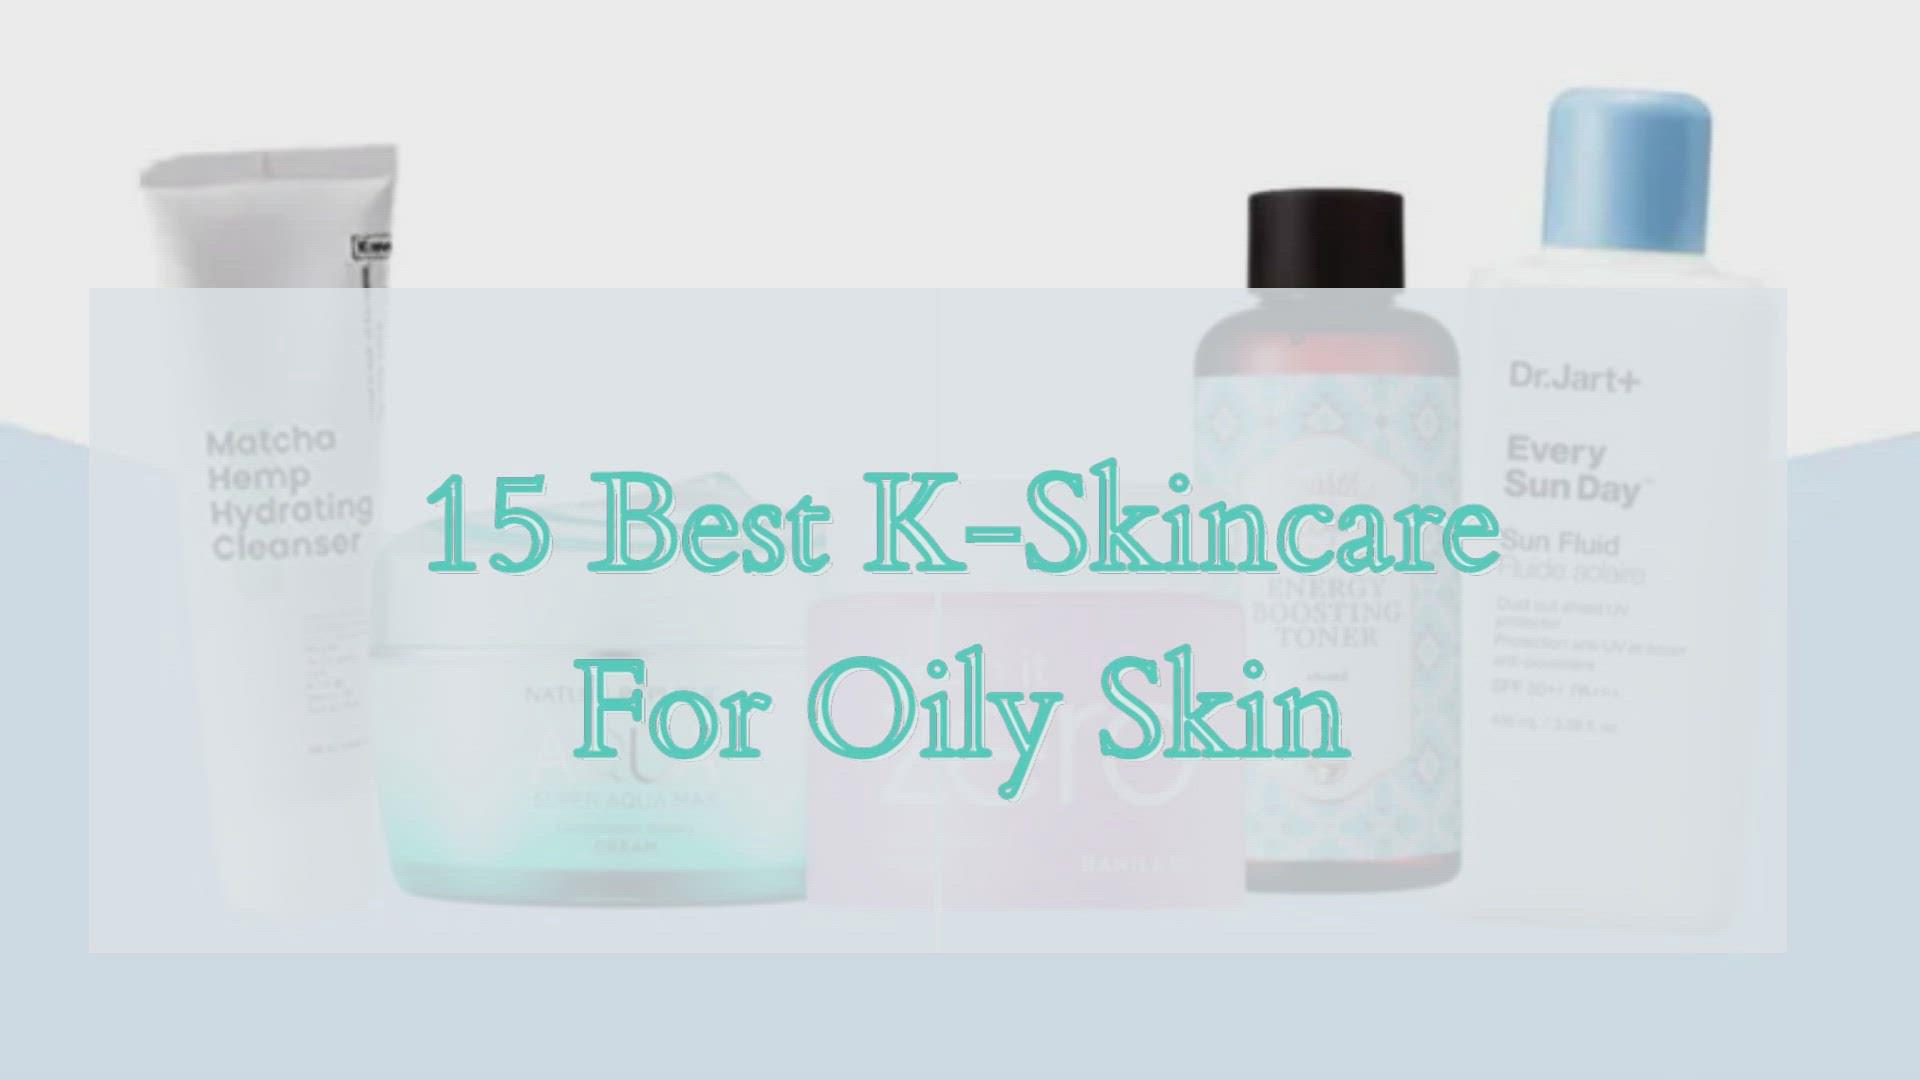 'Video thumbnail for K-Skincare for Oily Skin'